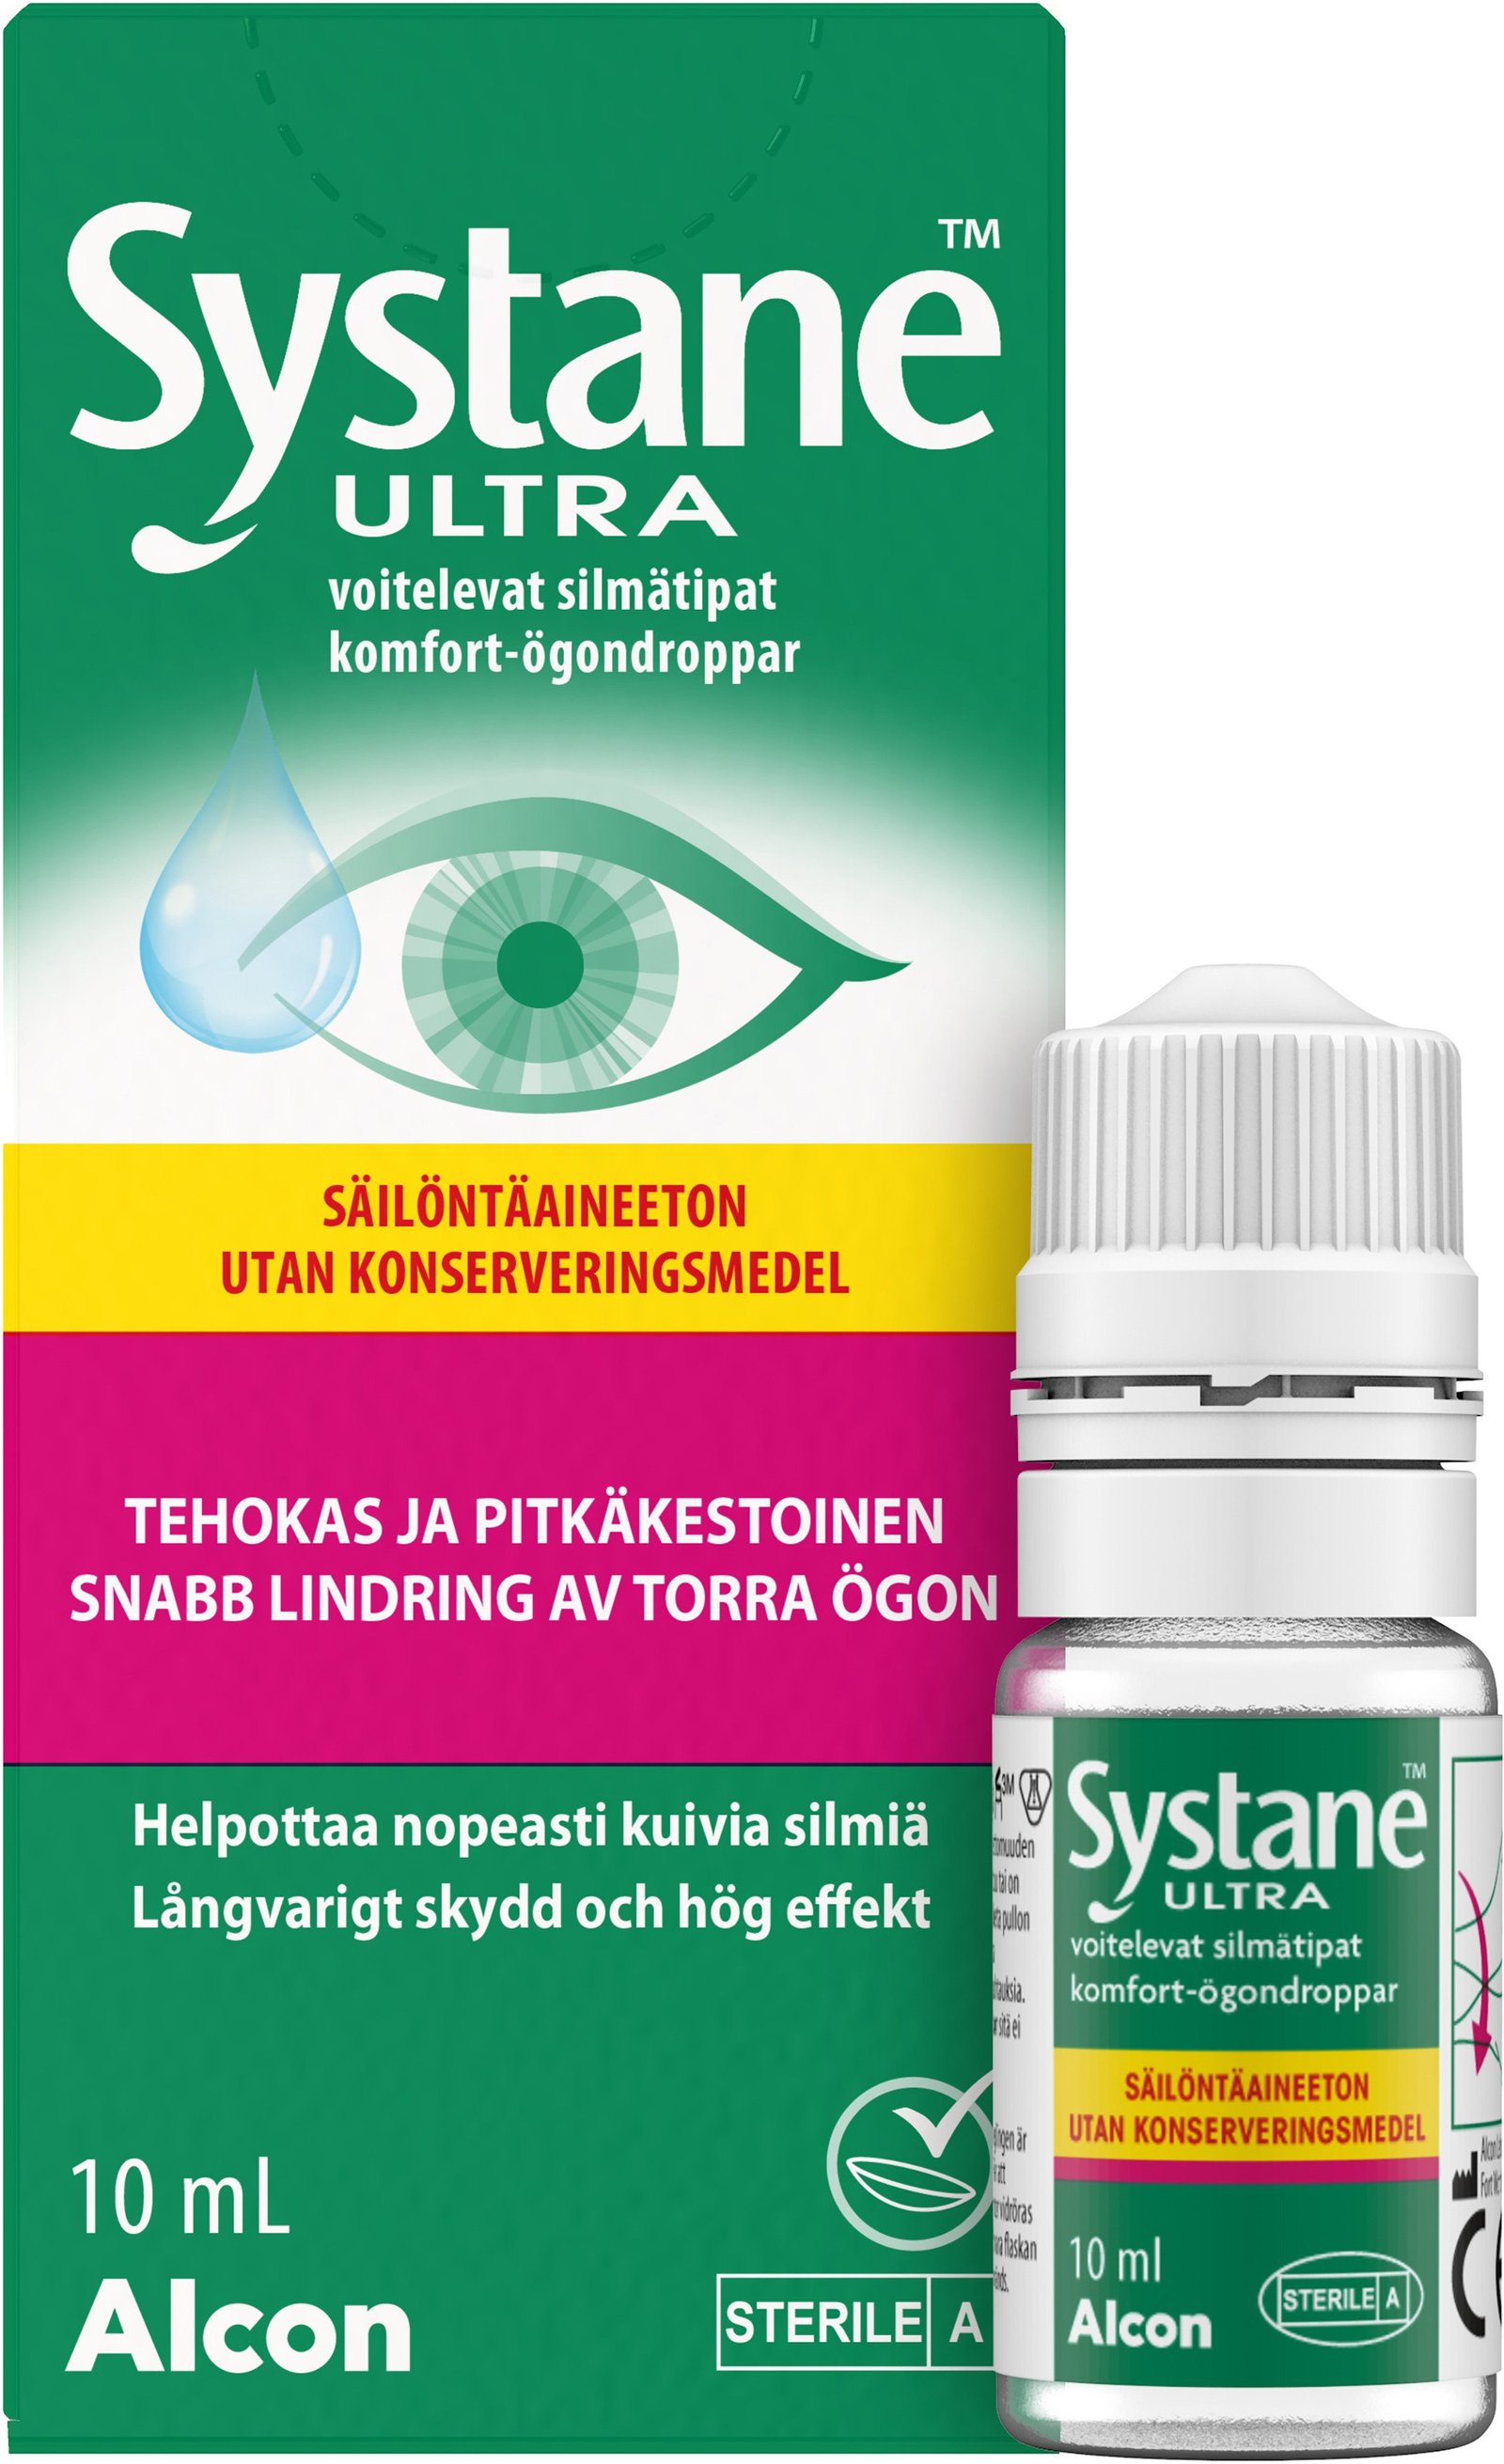 Systane Ultra Ögondroppar Utan konserveringmedel 10 ml